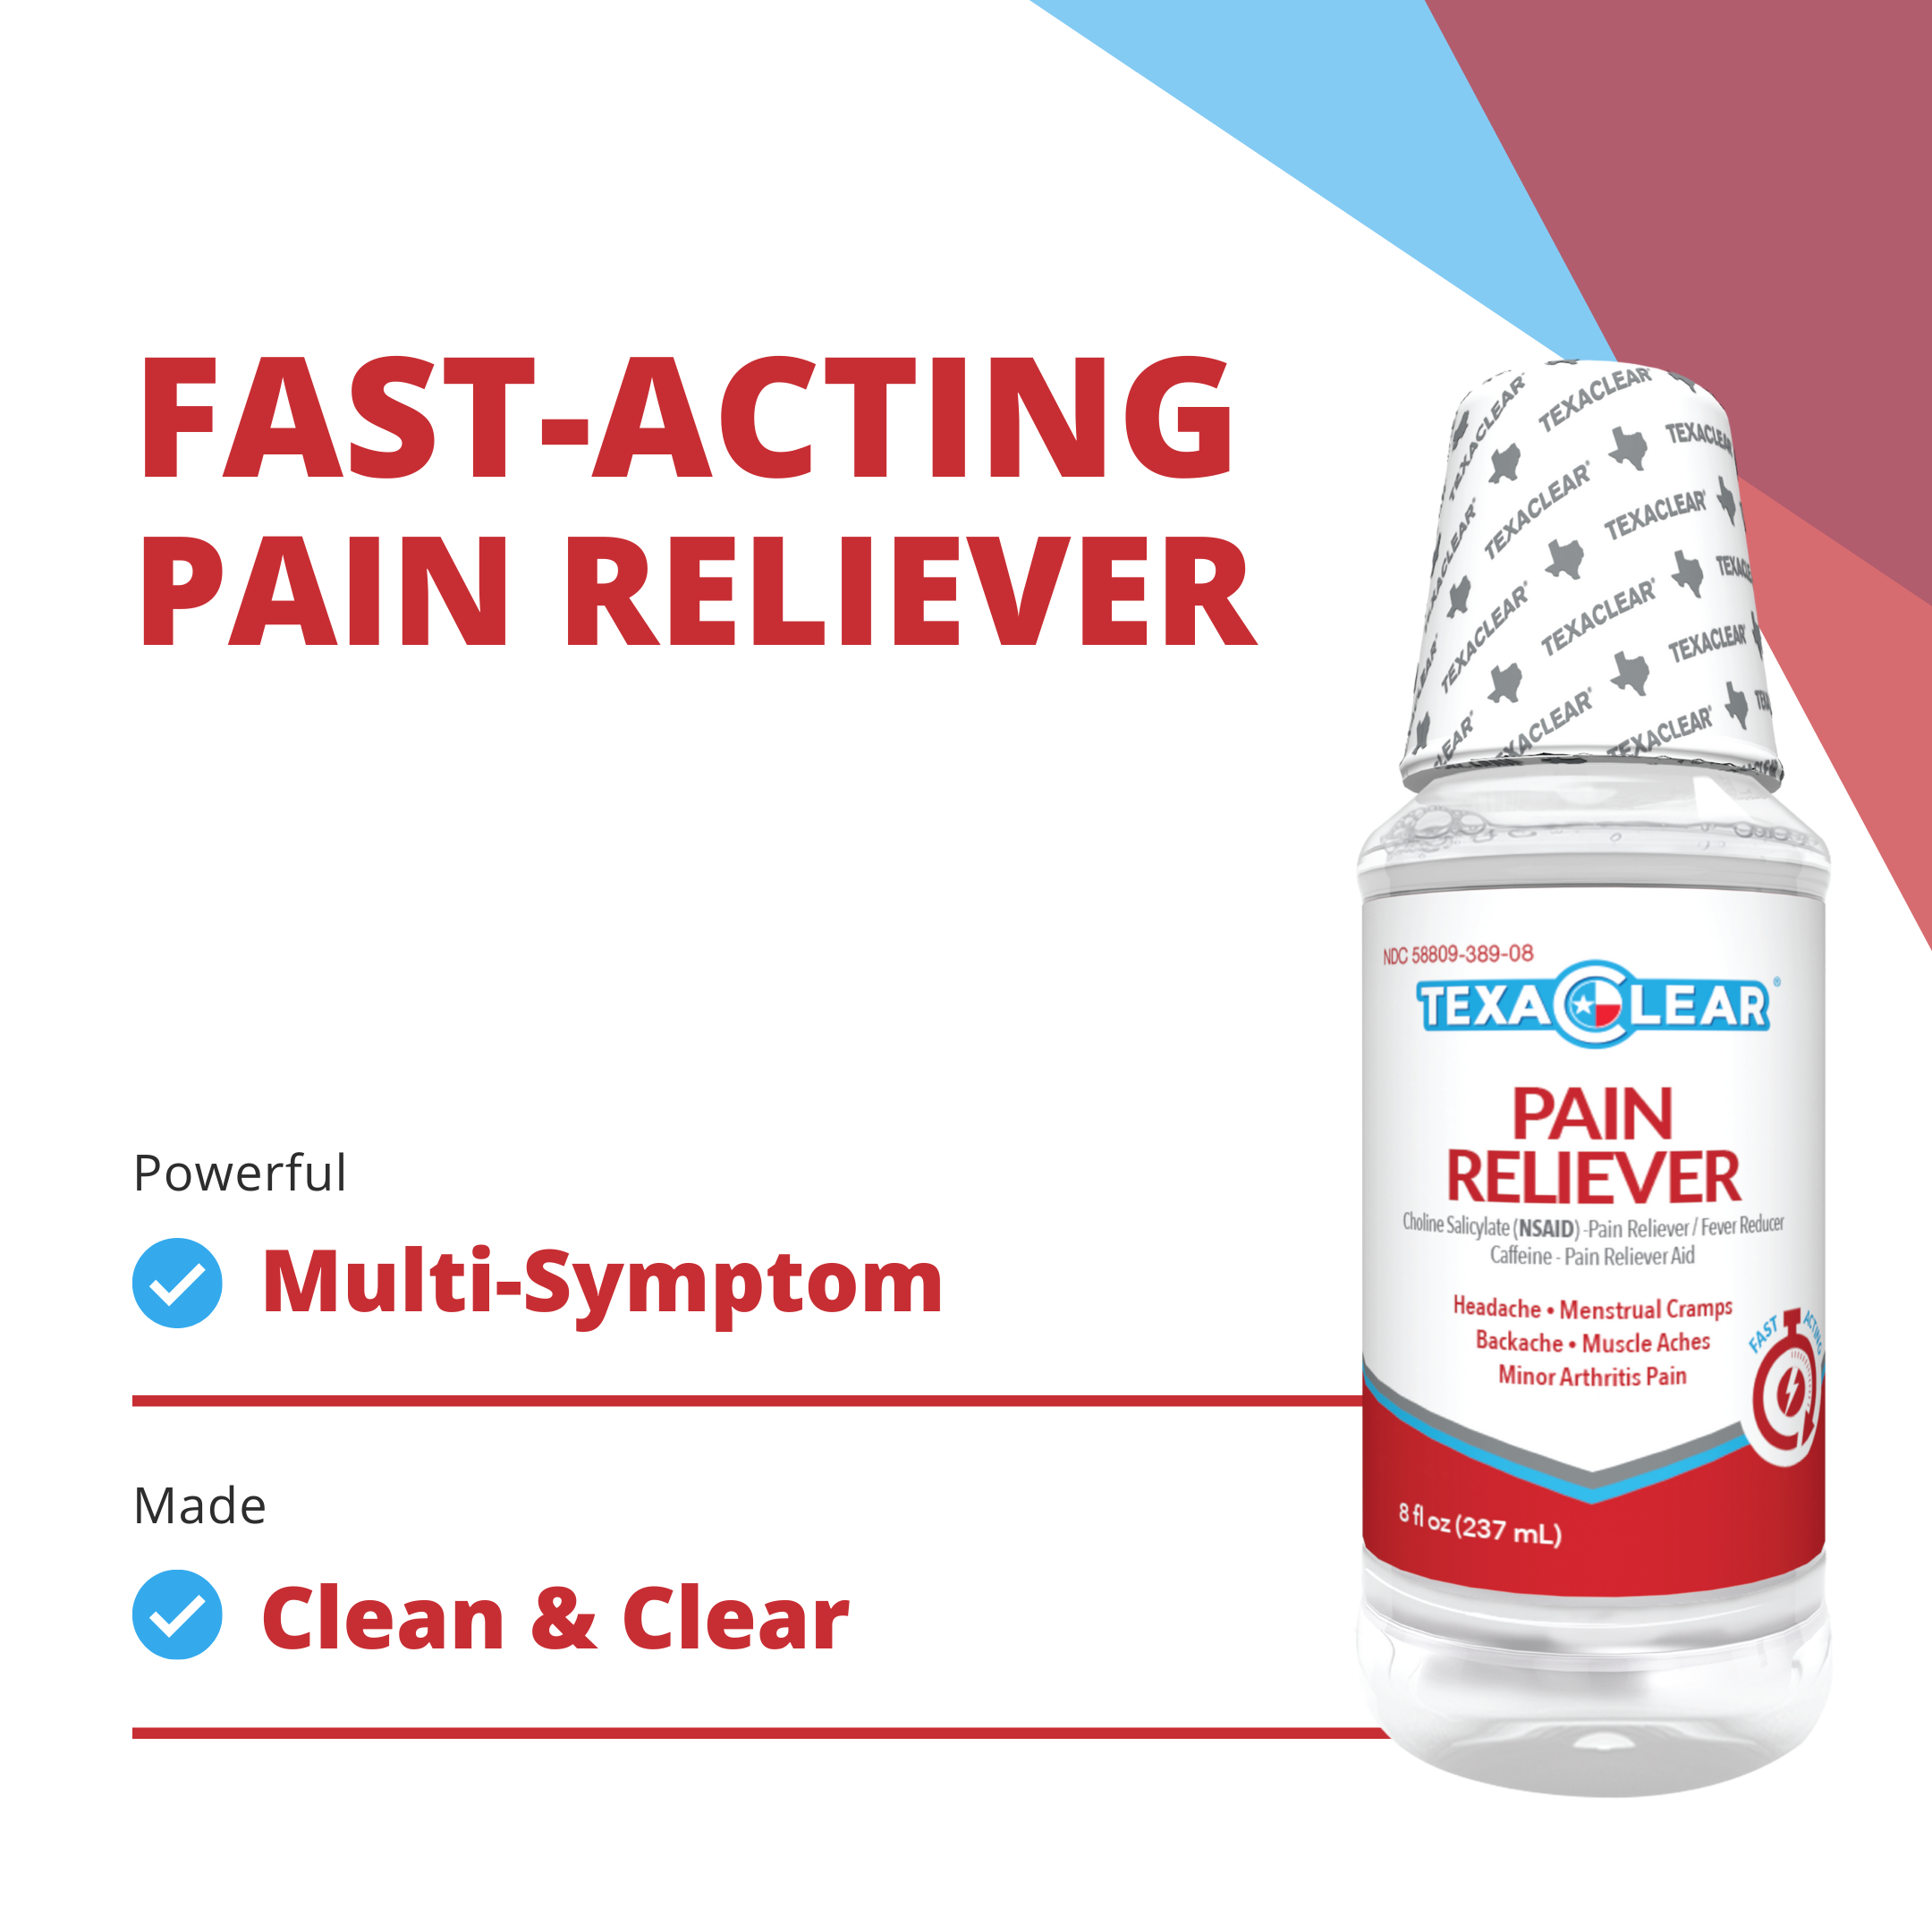 TexaClear® Liquid Pain Reliever